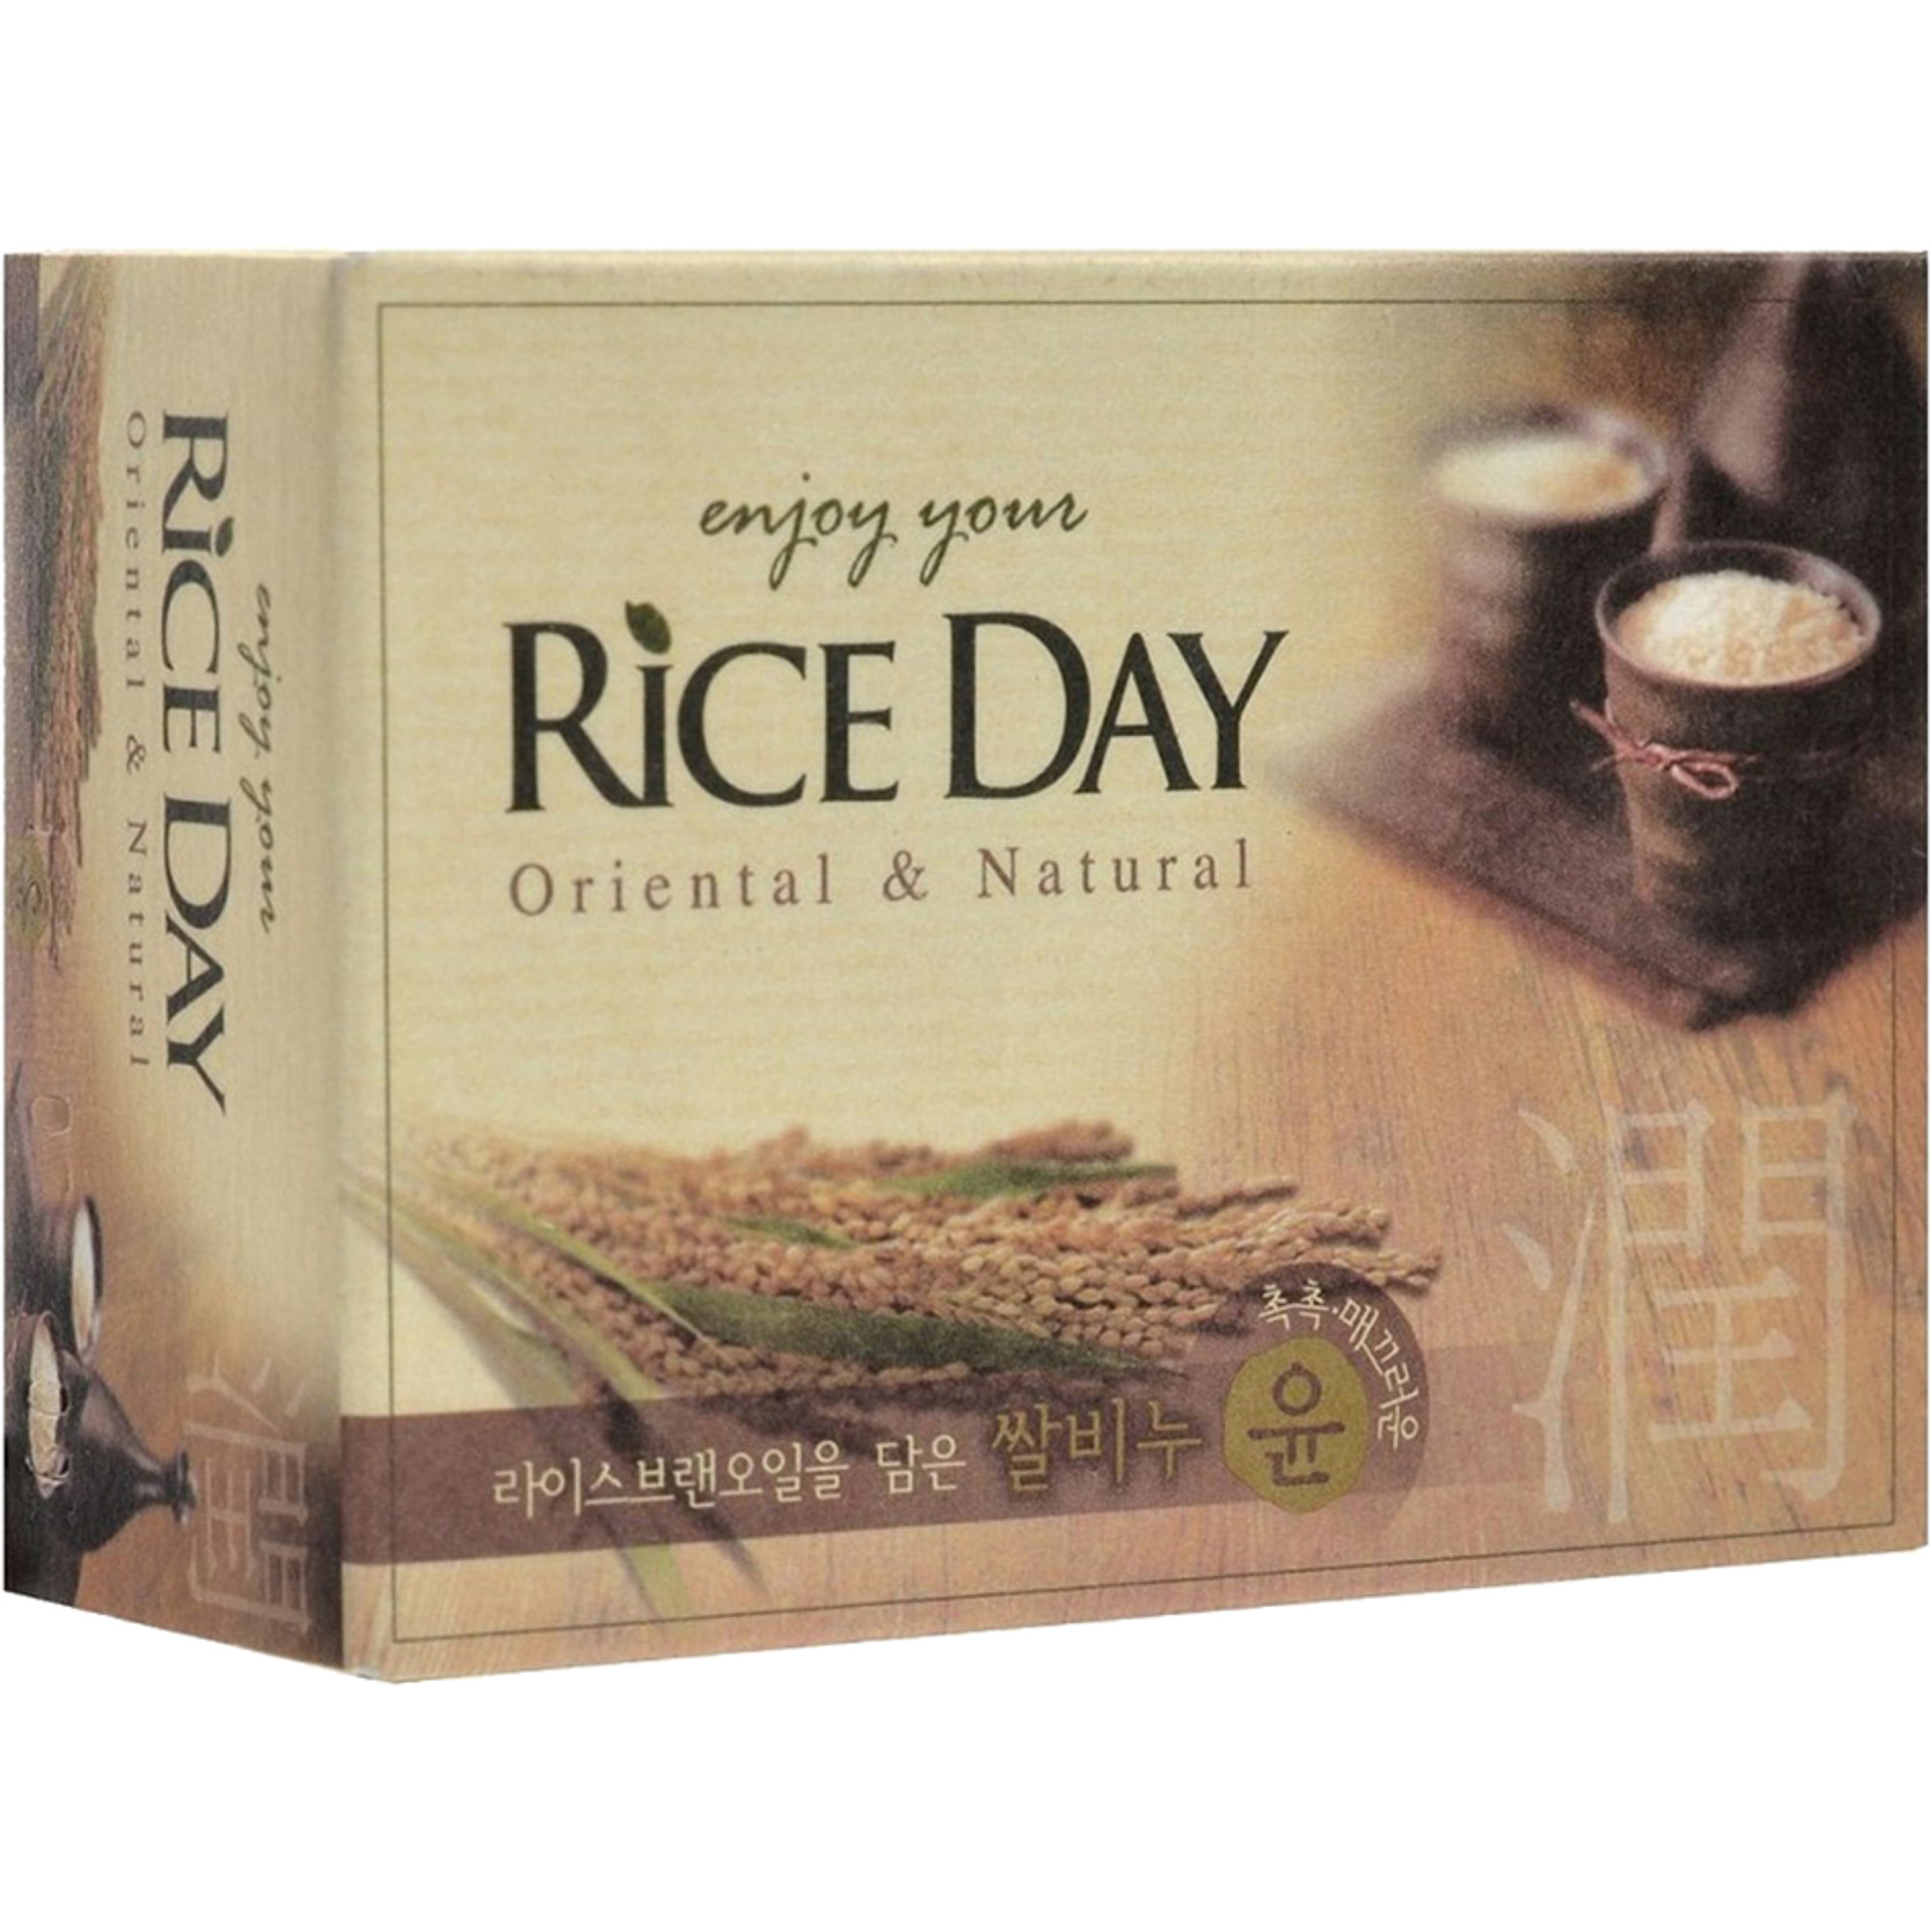 Мыло CJ Lion Rice Day с экстрактом рисовых отрубей 100 г мыло с экстрактом рисовых отрубей rice day rice bran oil soap 100г